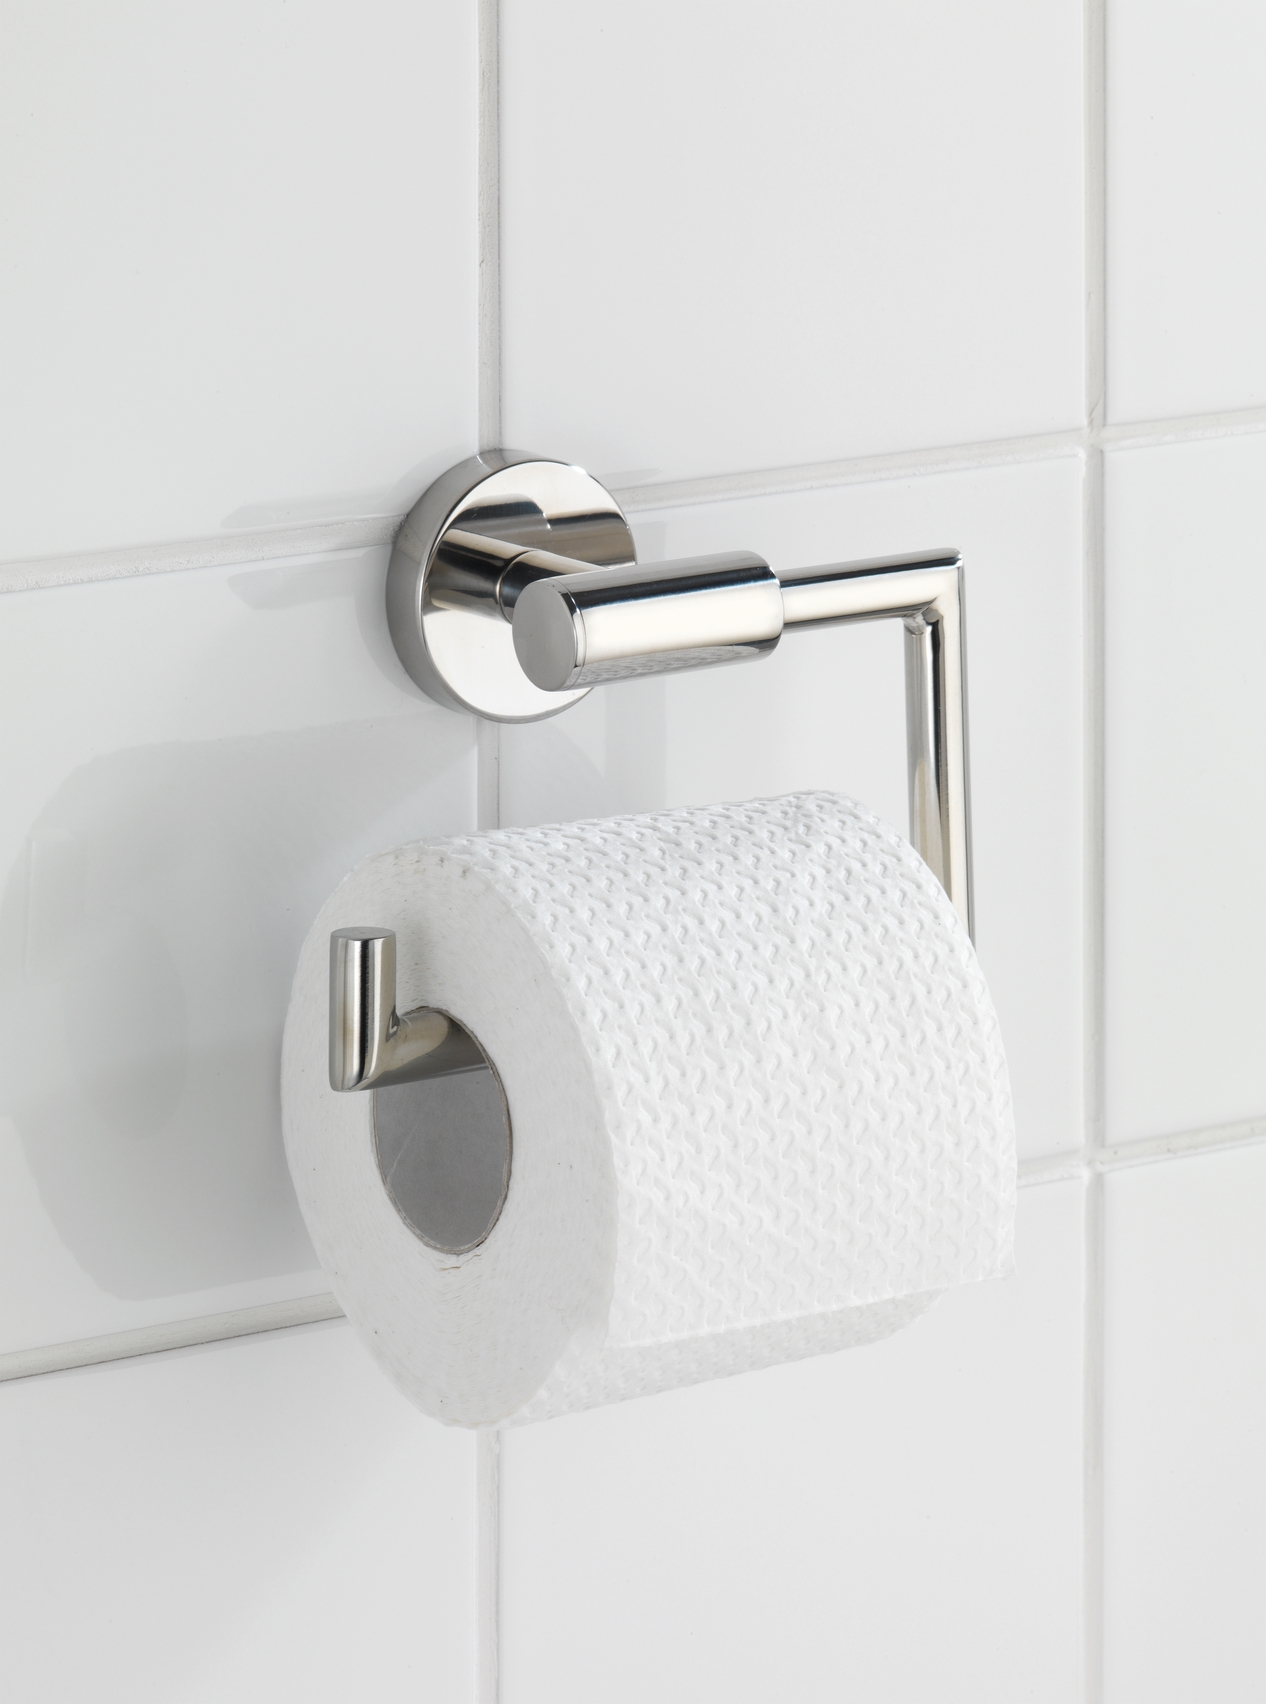 Wenko Toilettenpapierhalter Bosio 15 x 10,5 x 6,5 cm, ohne Deckel, silber glänzend